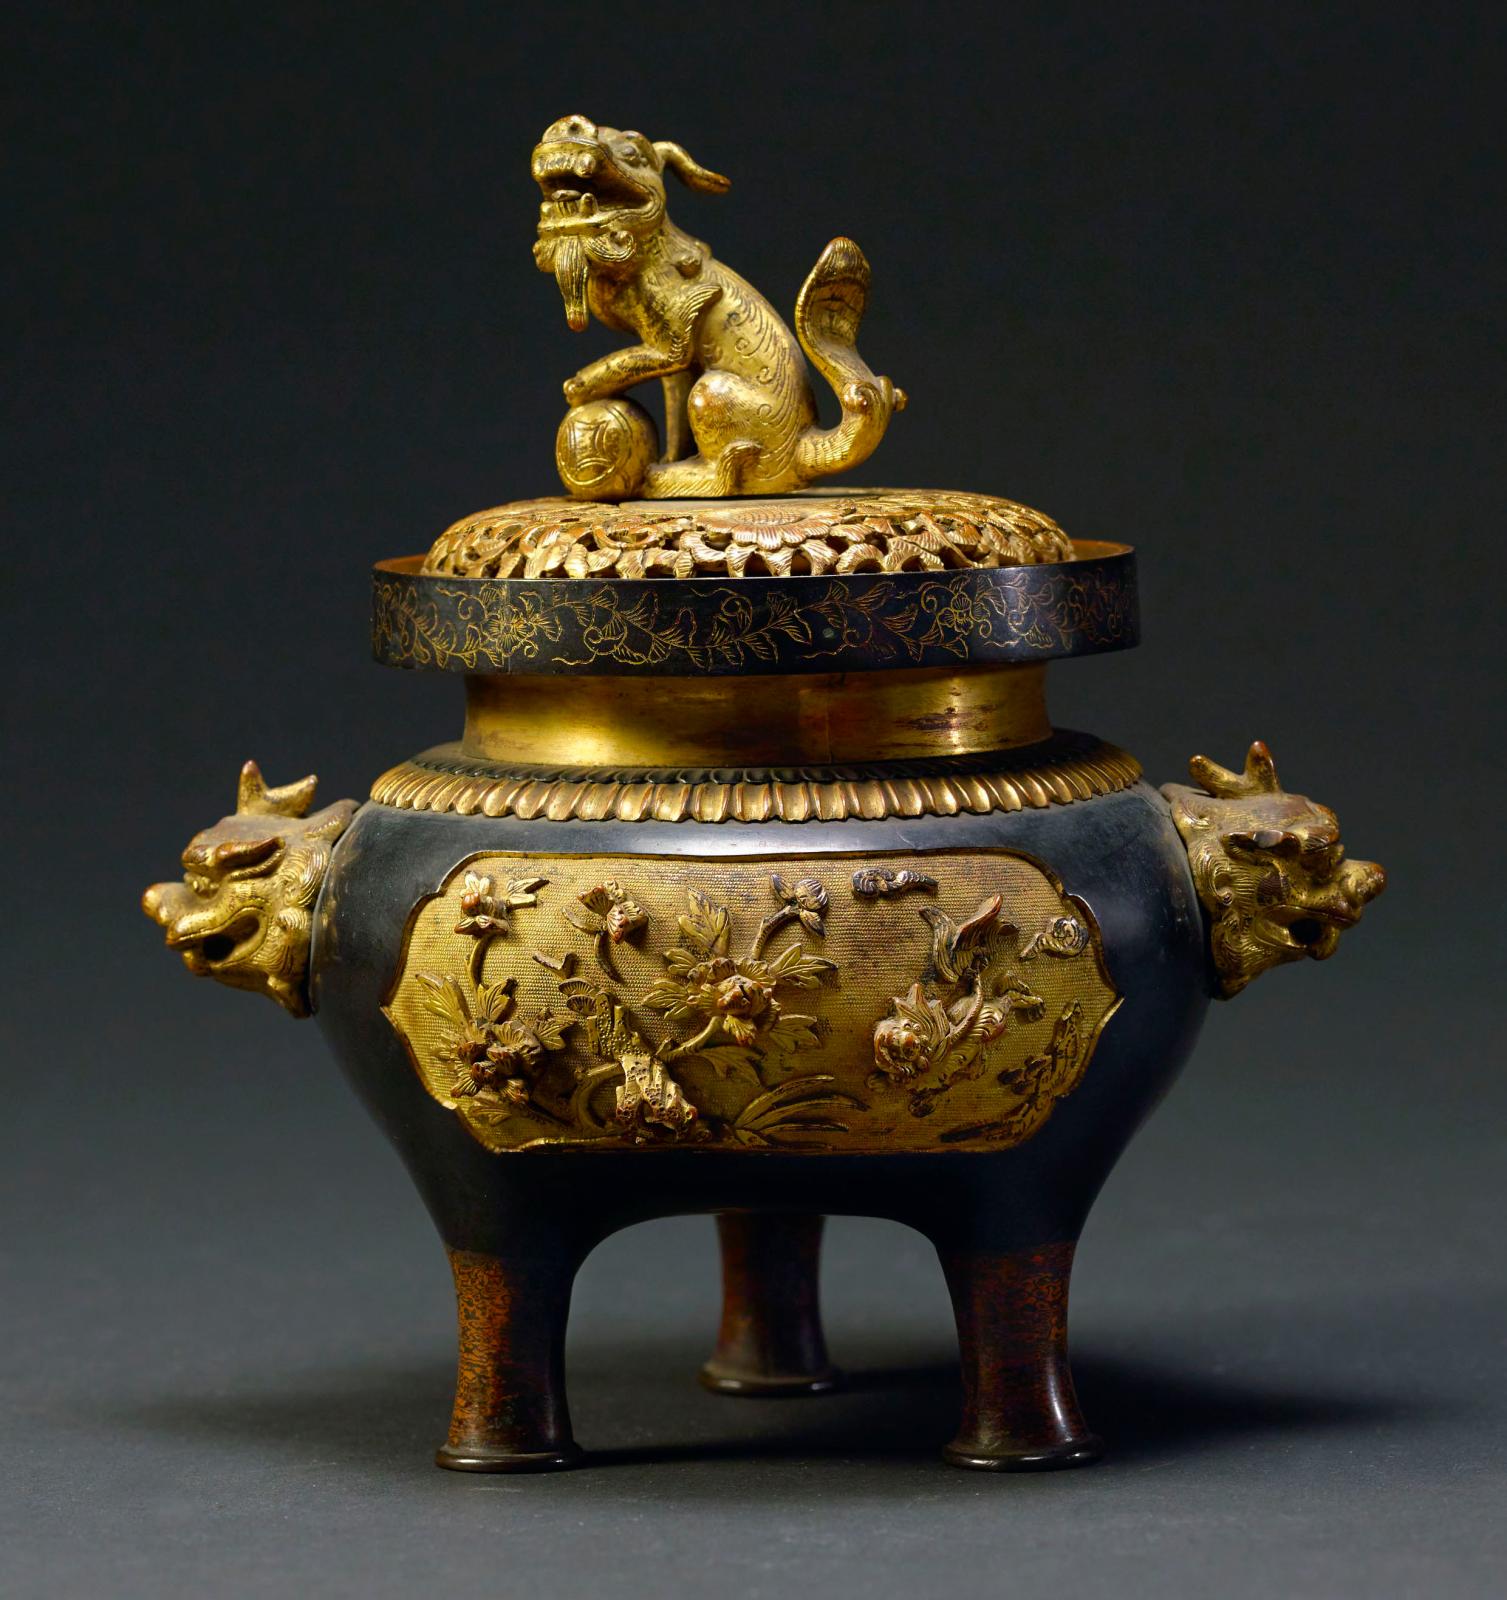 Brûle-parfum ajouré, bronze doré, dynastie des Qing (XVIIe siècle - XXe siècle), musée de Shanghai.